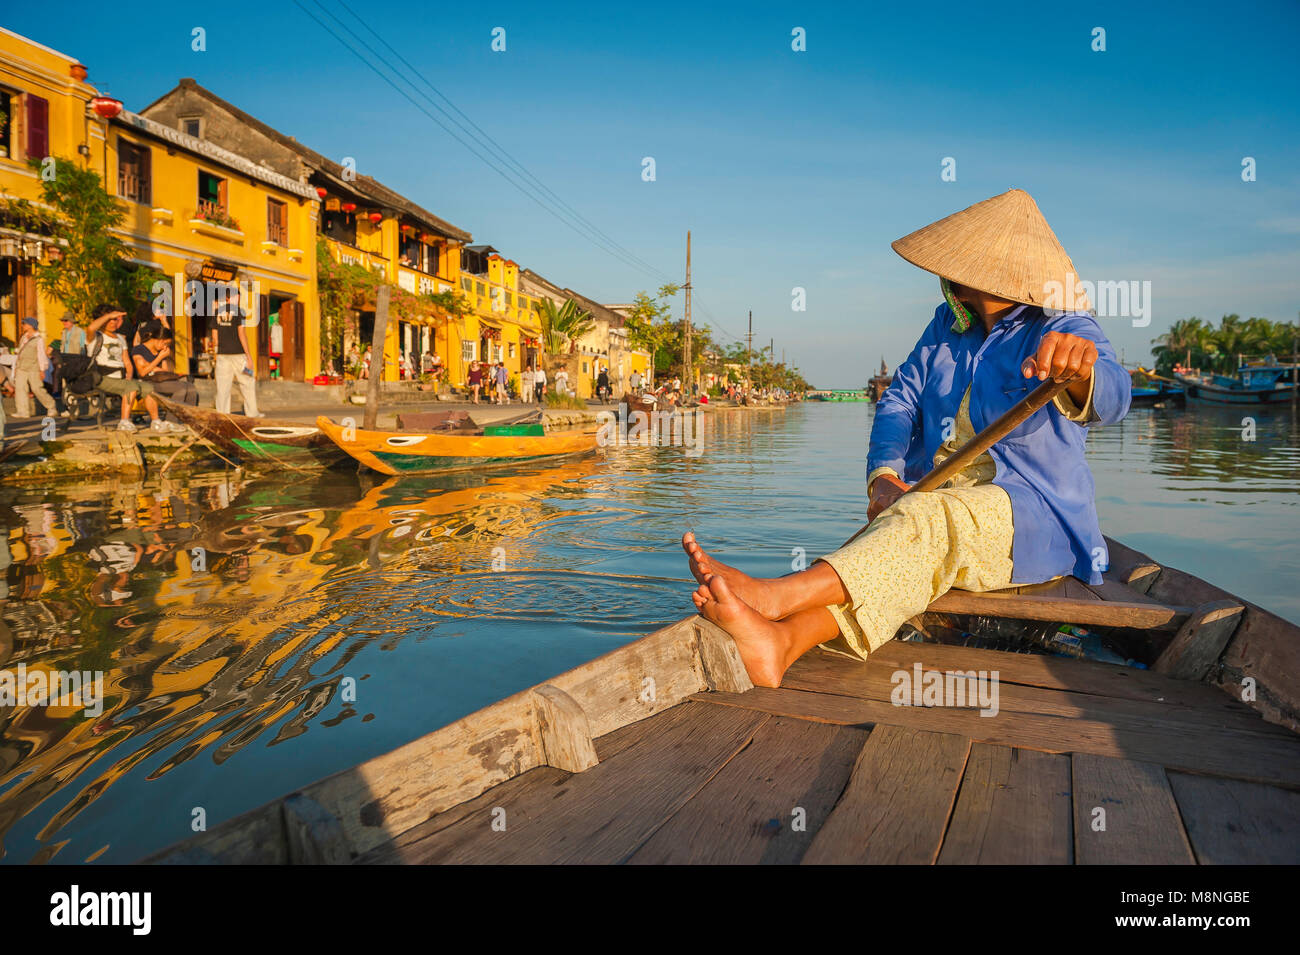 Vietnam tourism couleur, un bateau vietnamien 'lady' dans un chapeau conique glisse le long de la rivière Thu Bon à Hoi An, Vietnam central. Banque D'Images